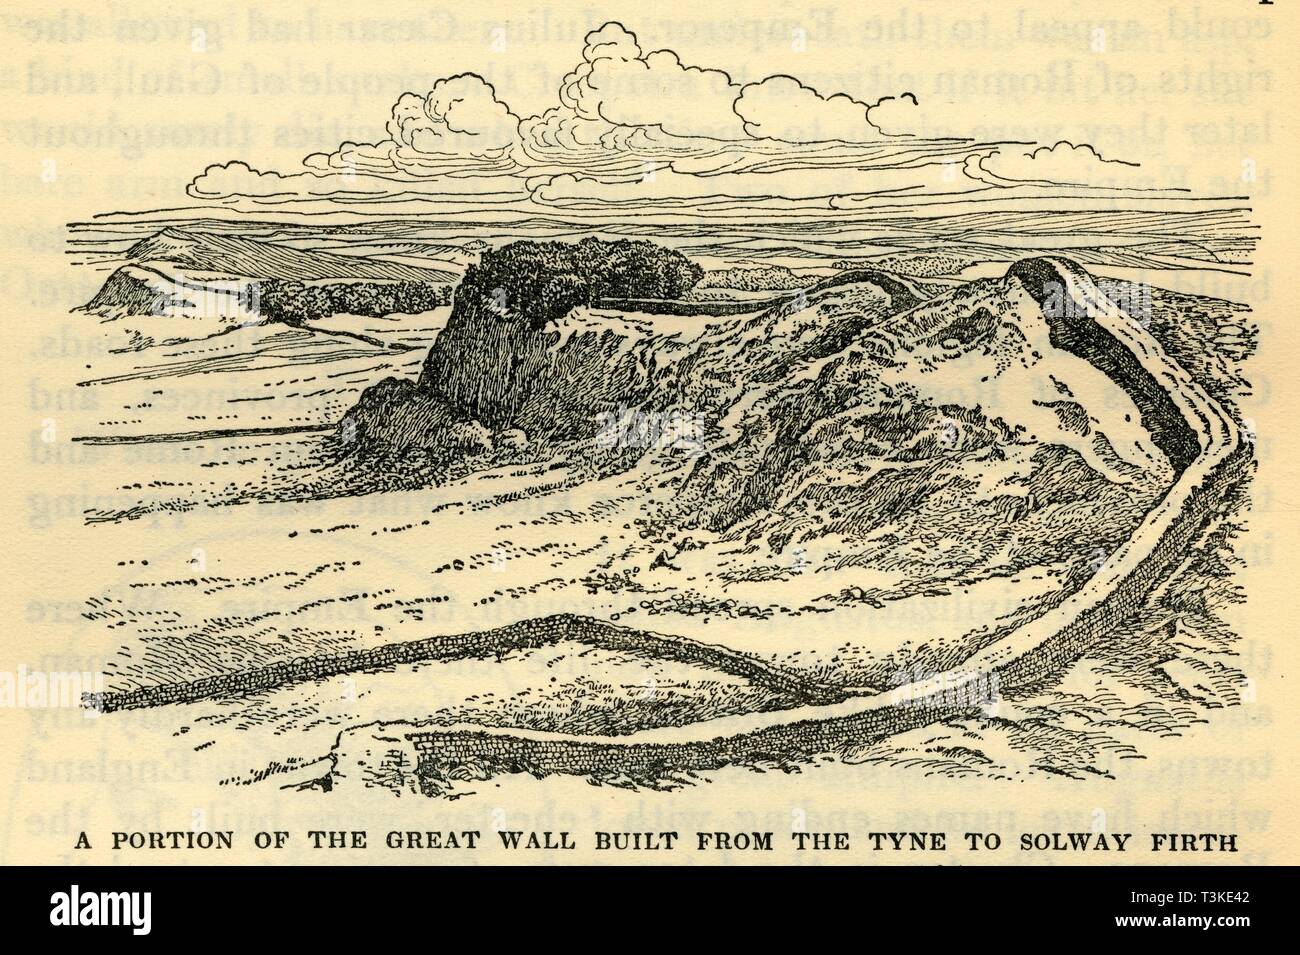 "Una parte de la gran muralla construida desde el Tyne a estuario Solway por el emperador Adriano en el 121 D.C." Creador: Desconocido. Foto de stock